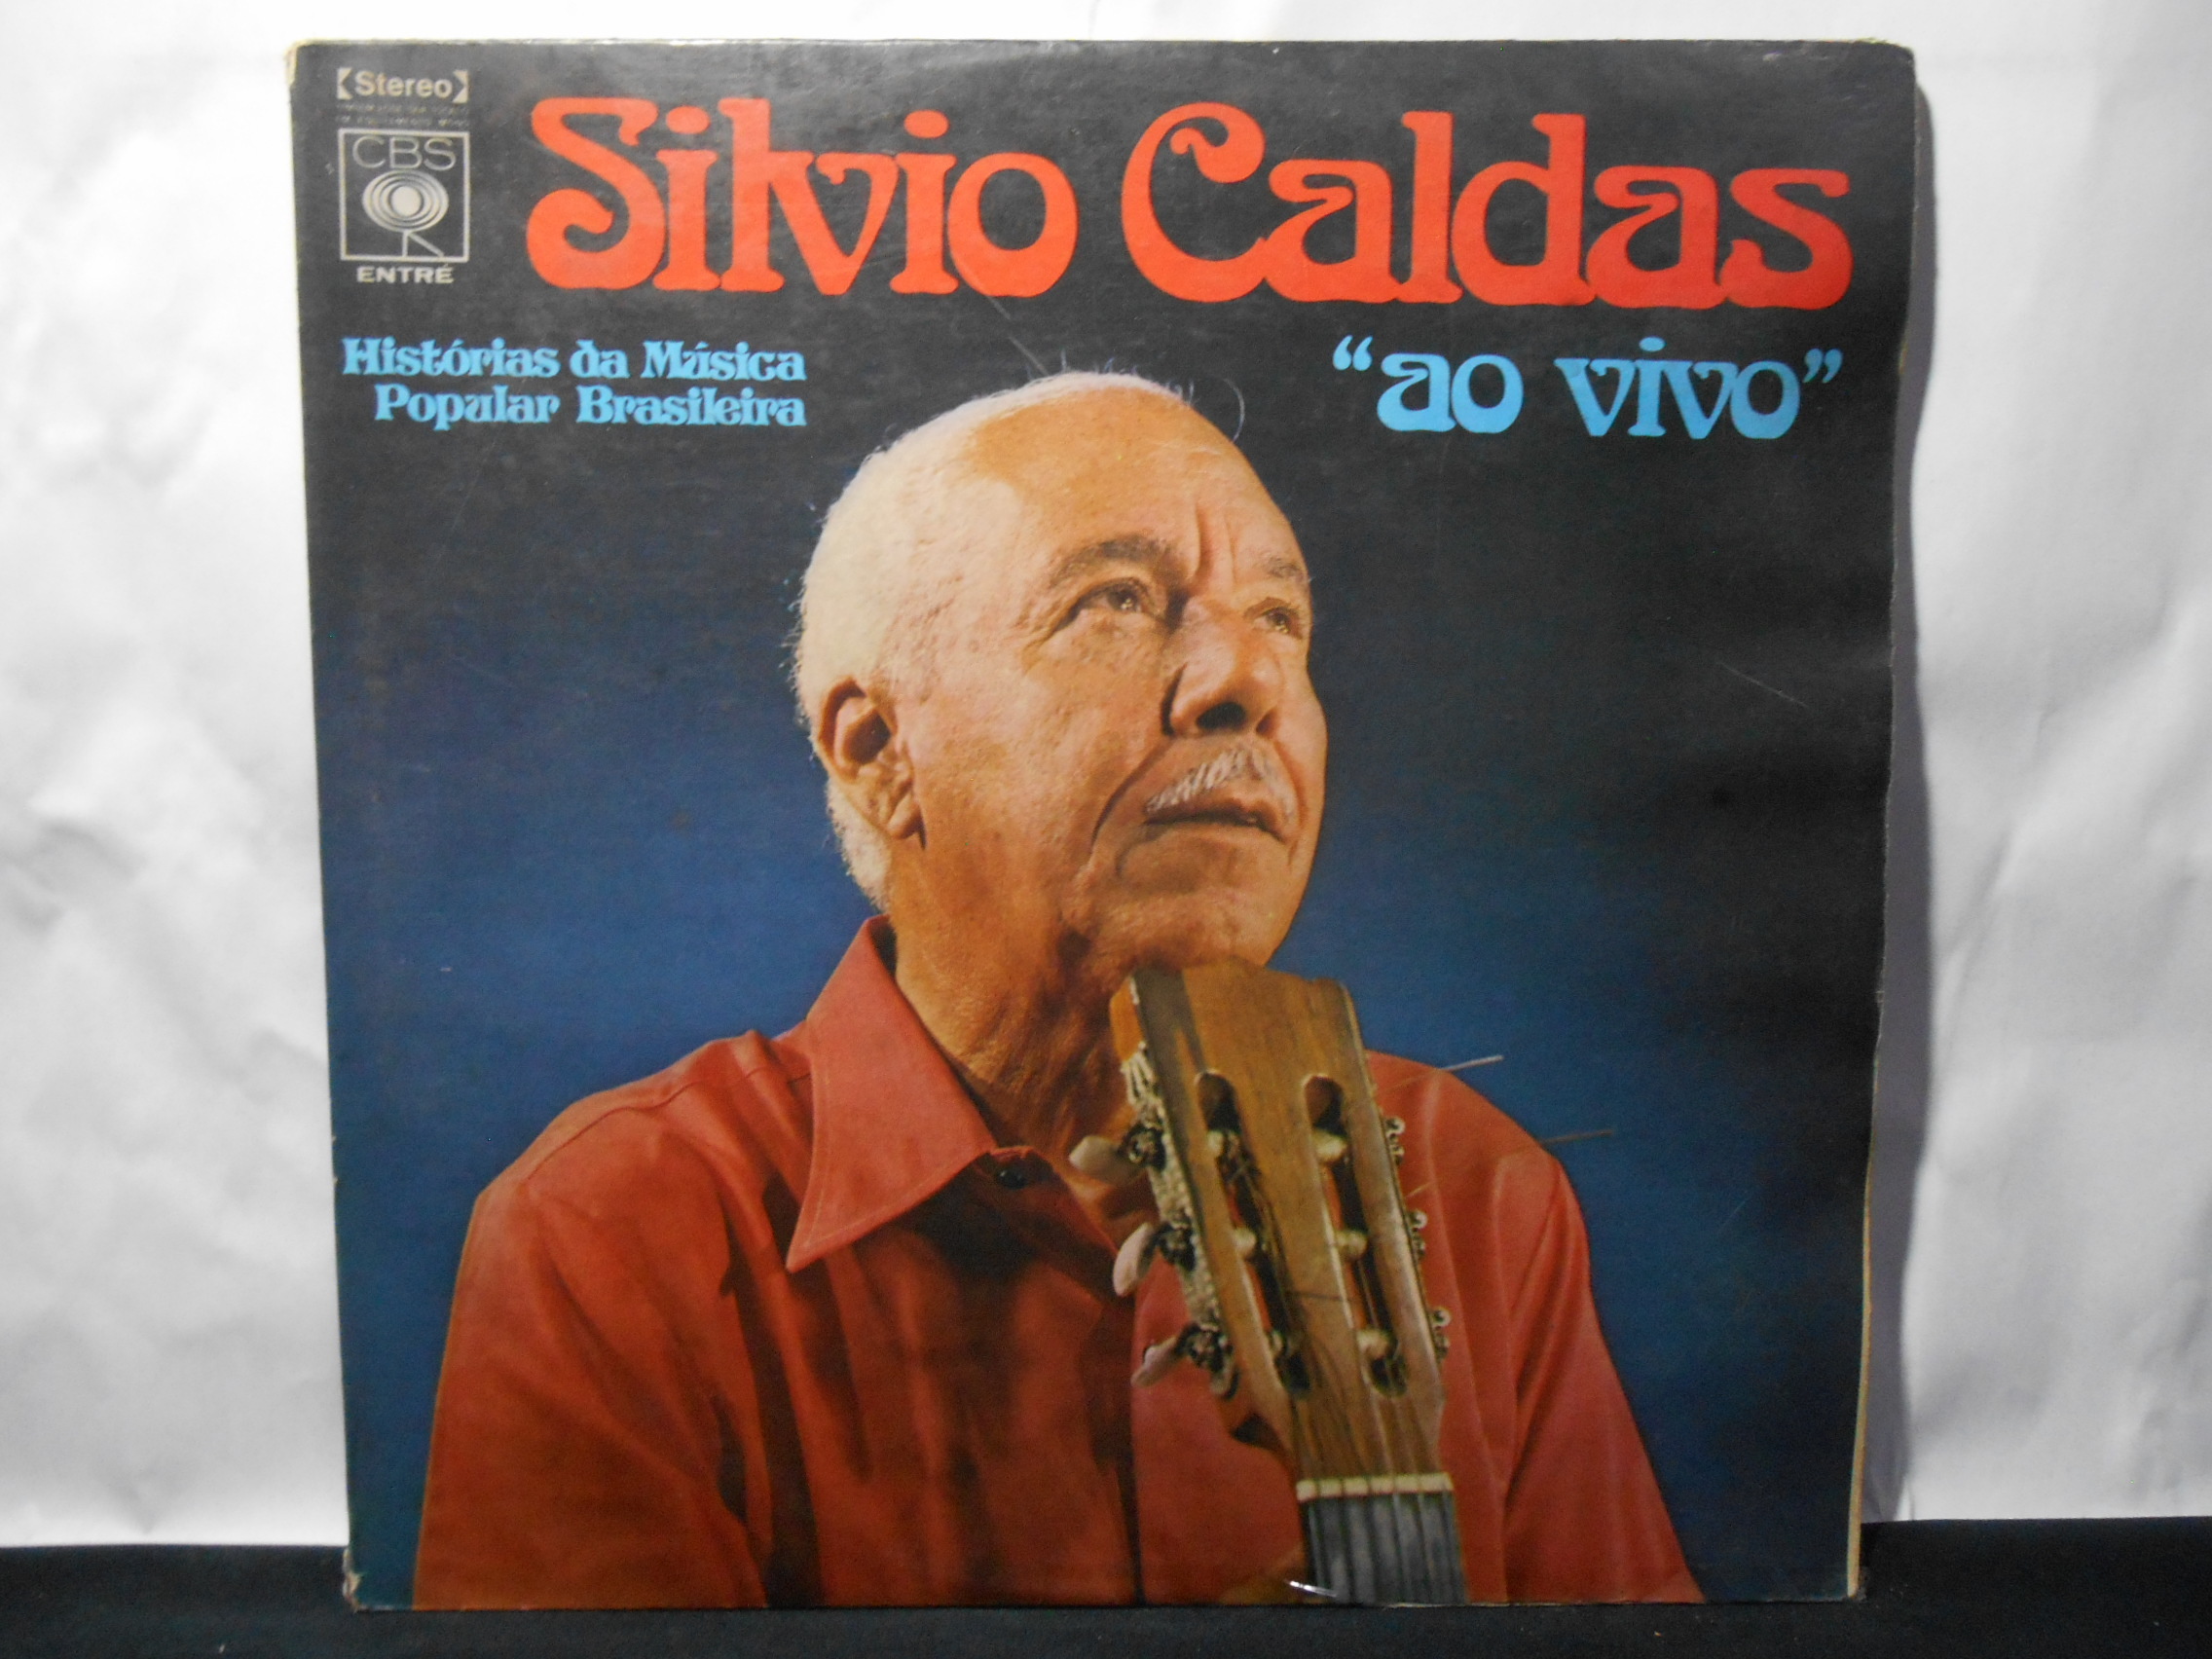 Vinil - Silvio Caldas - Ao Vivo (Duplo)